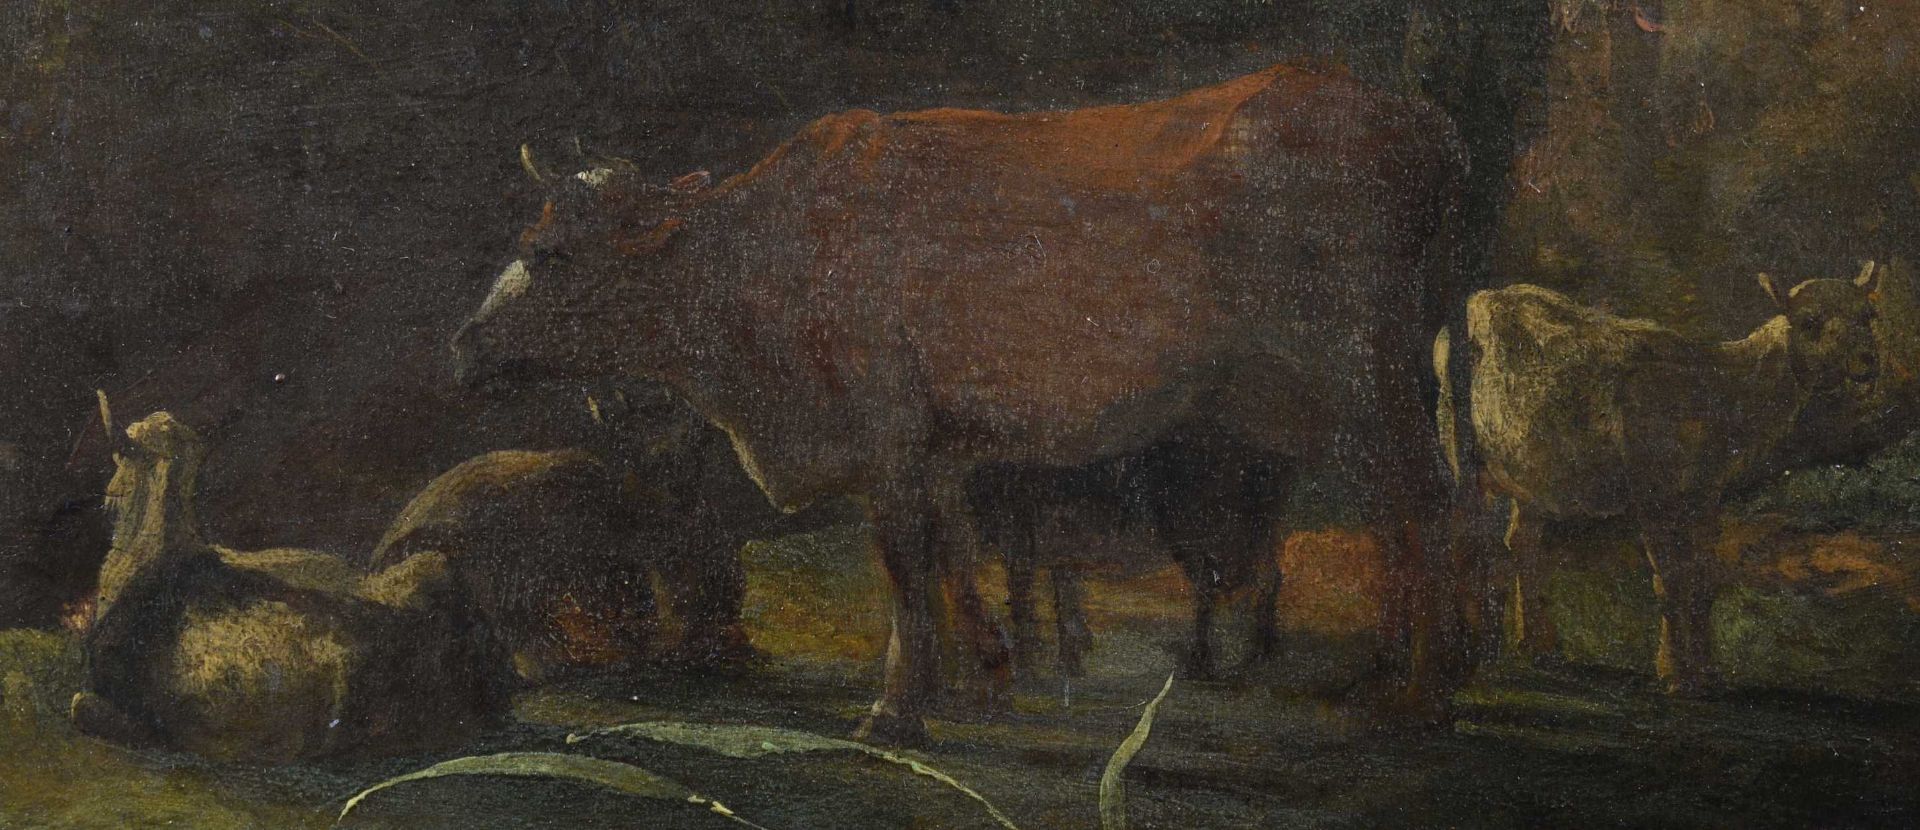 PIJNACKER, ADAMSchiedam 1620/22 - 1673 AmsterdamIdyllische Landschaft mit Viehherde.Öl auf Holz,sig. - Bild 6 aus 6